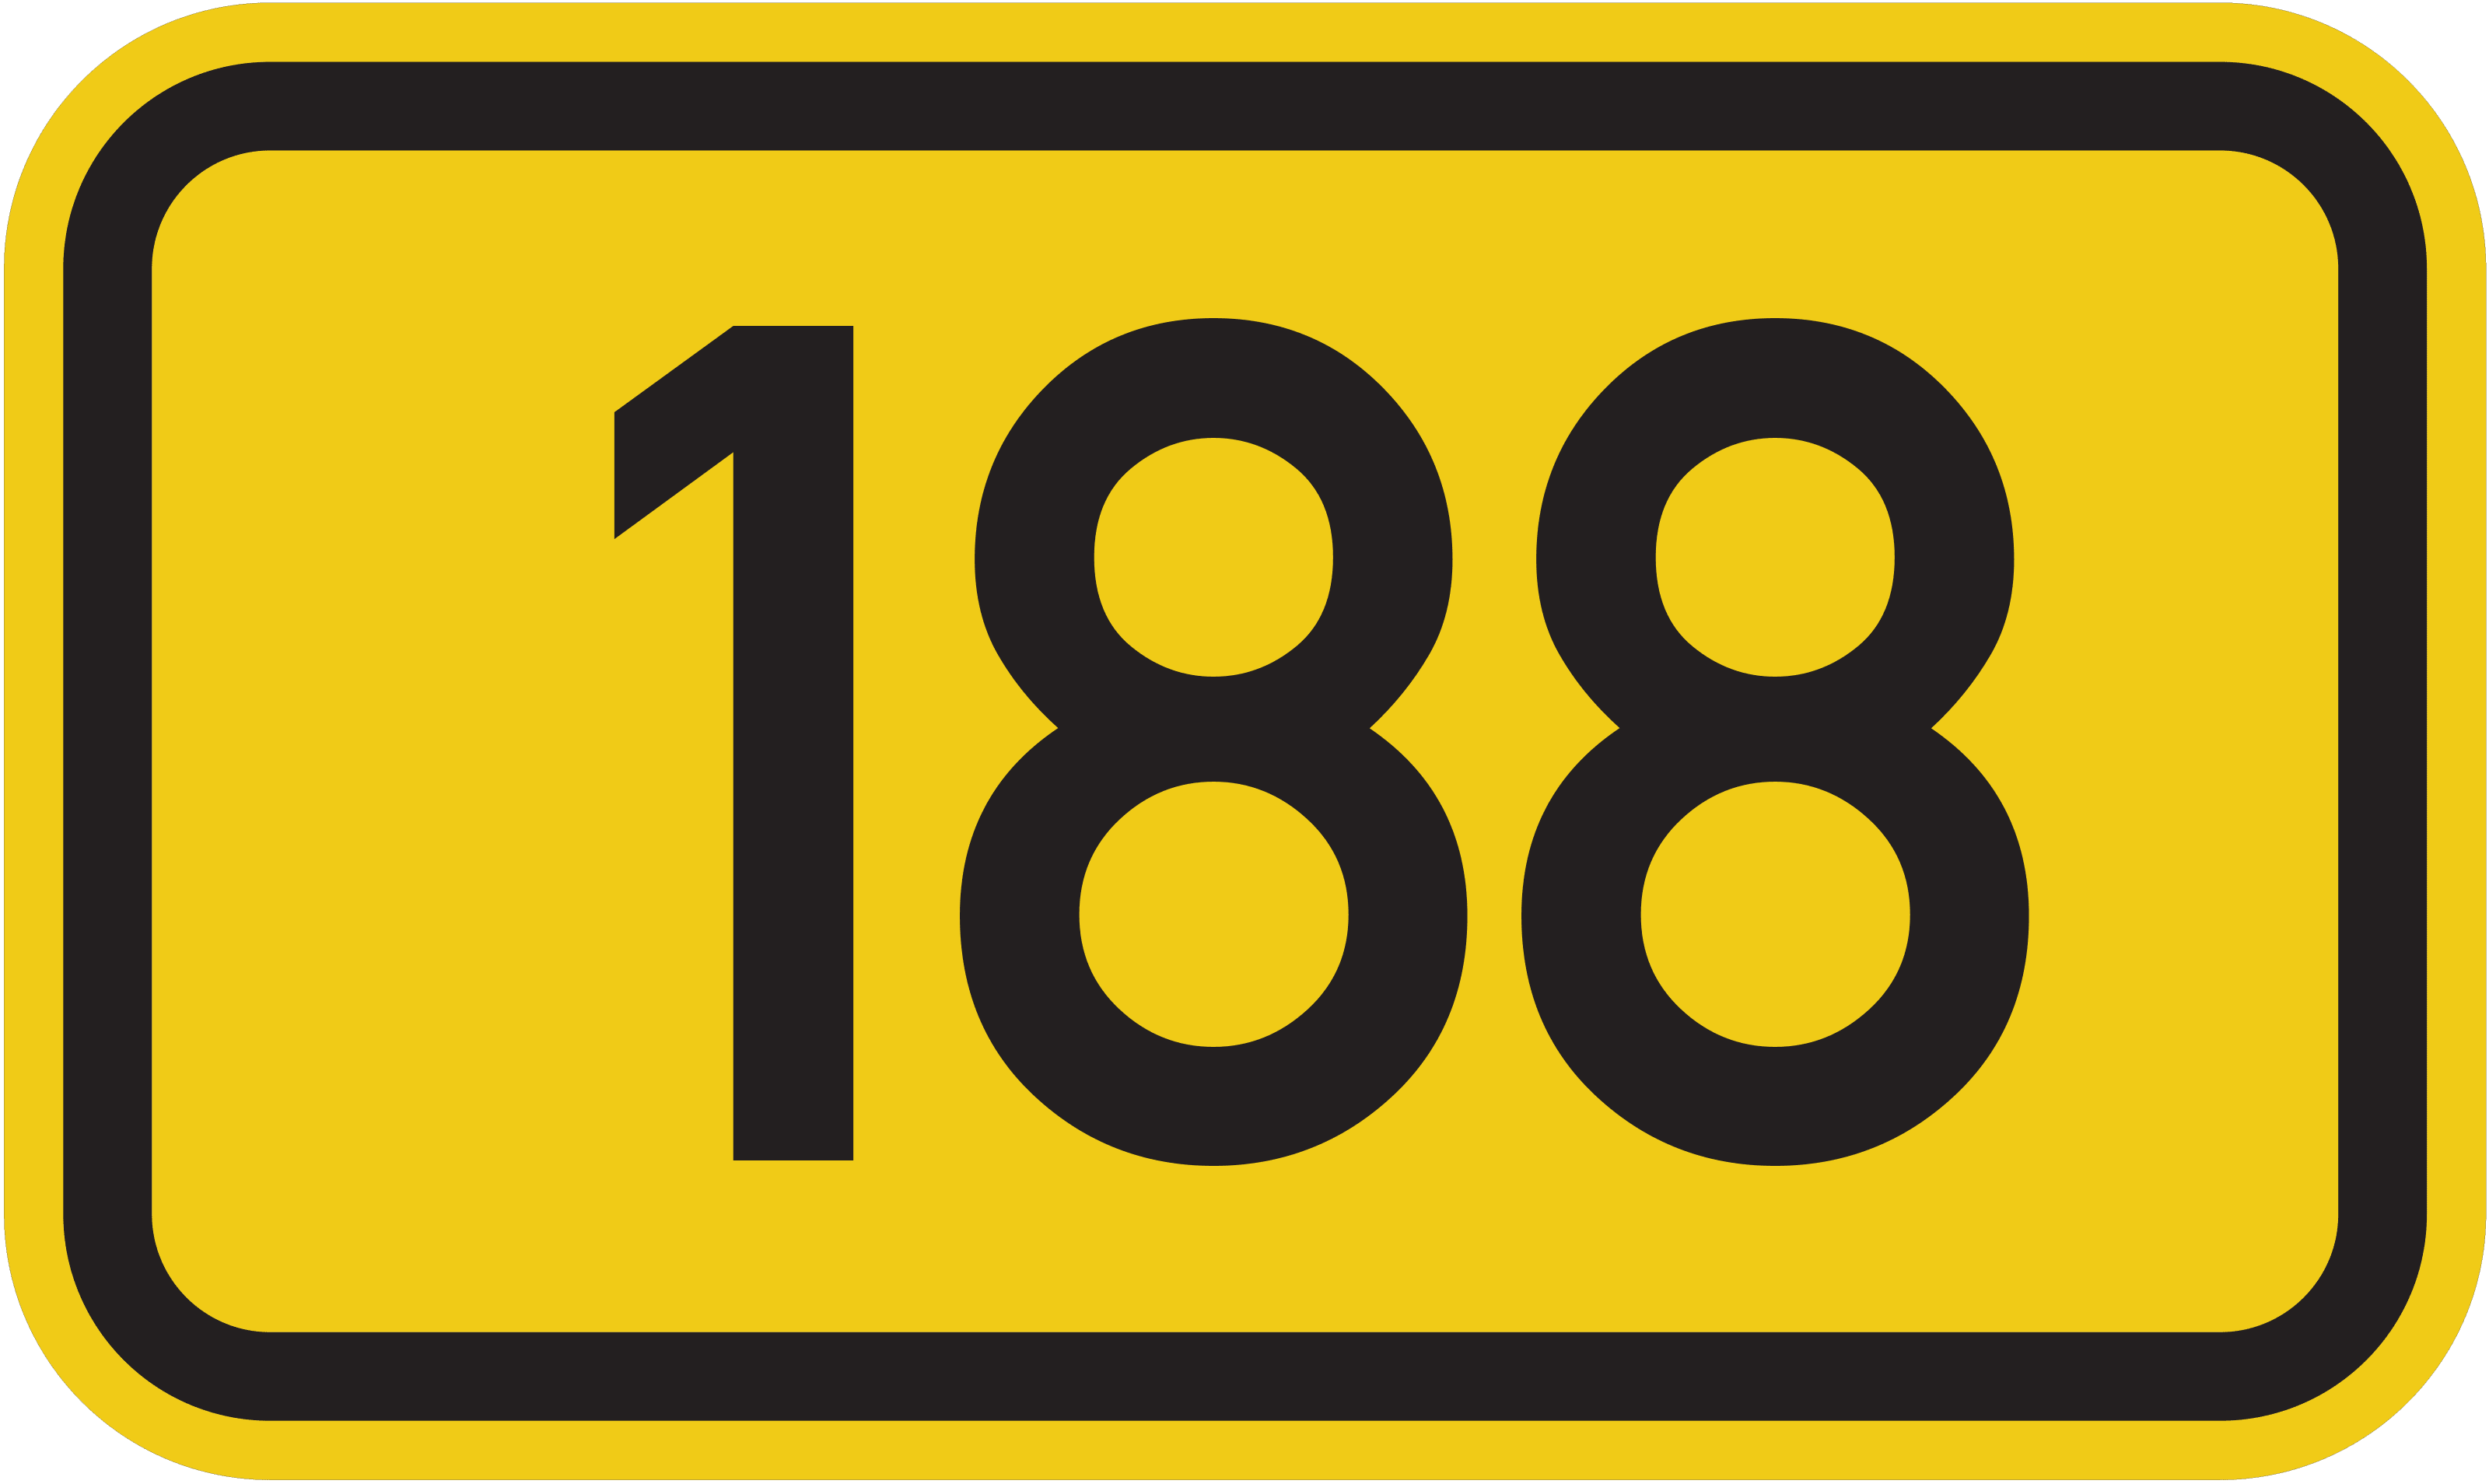 Bundesstraße B 188